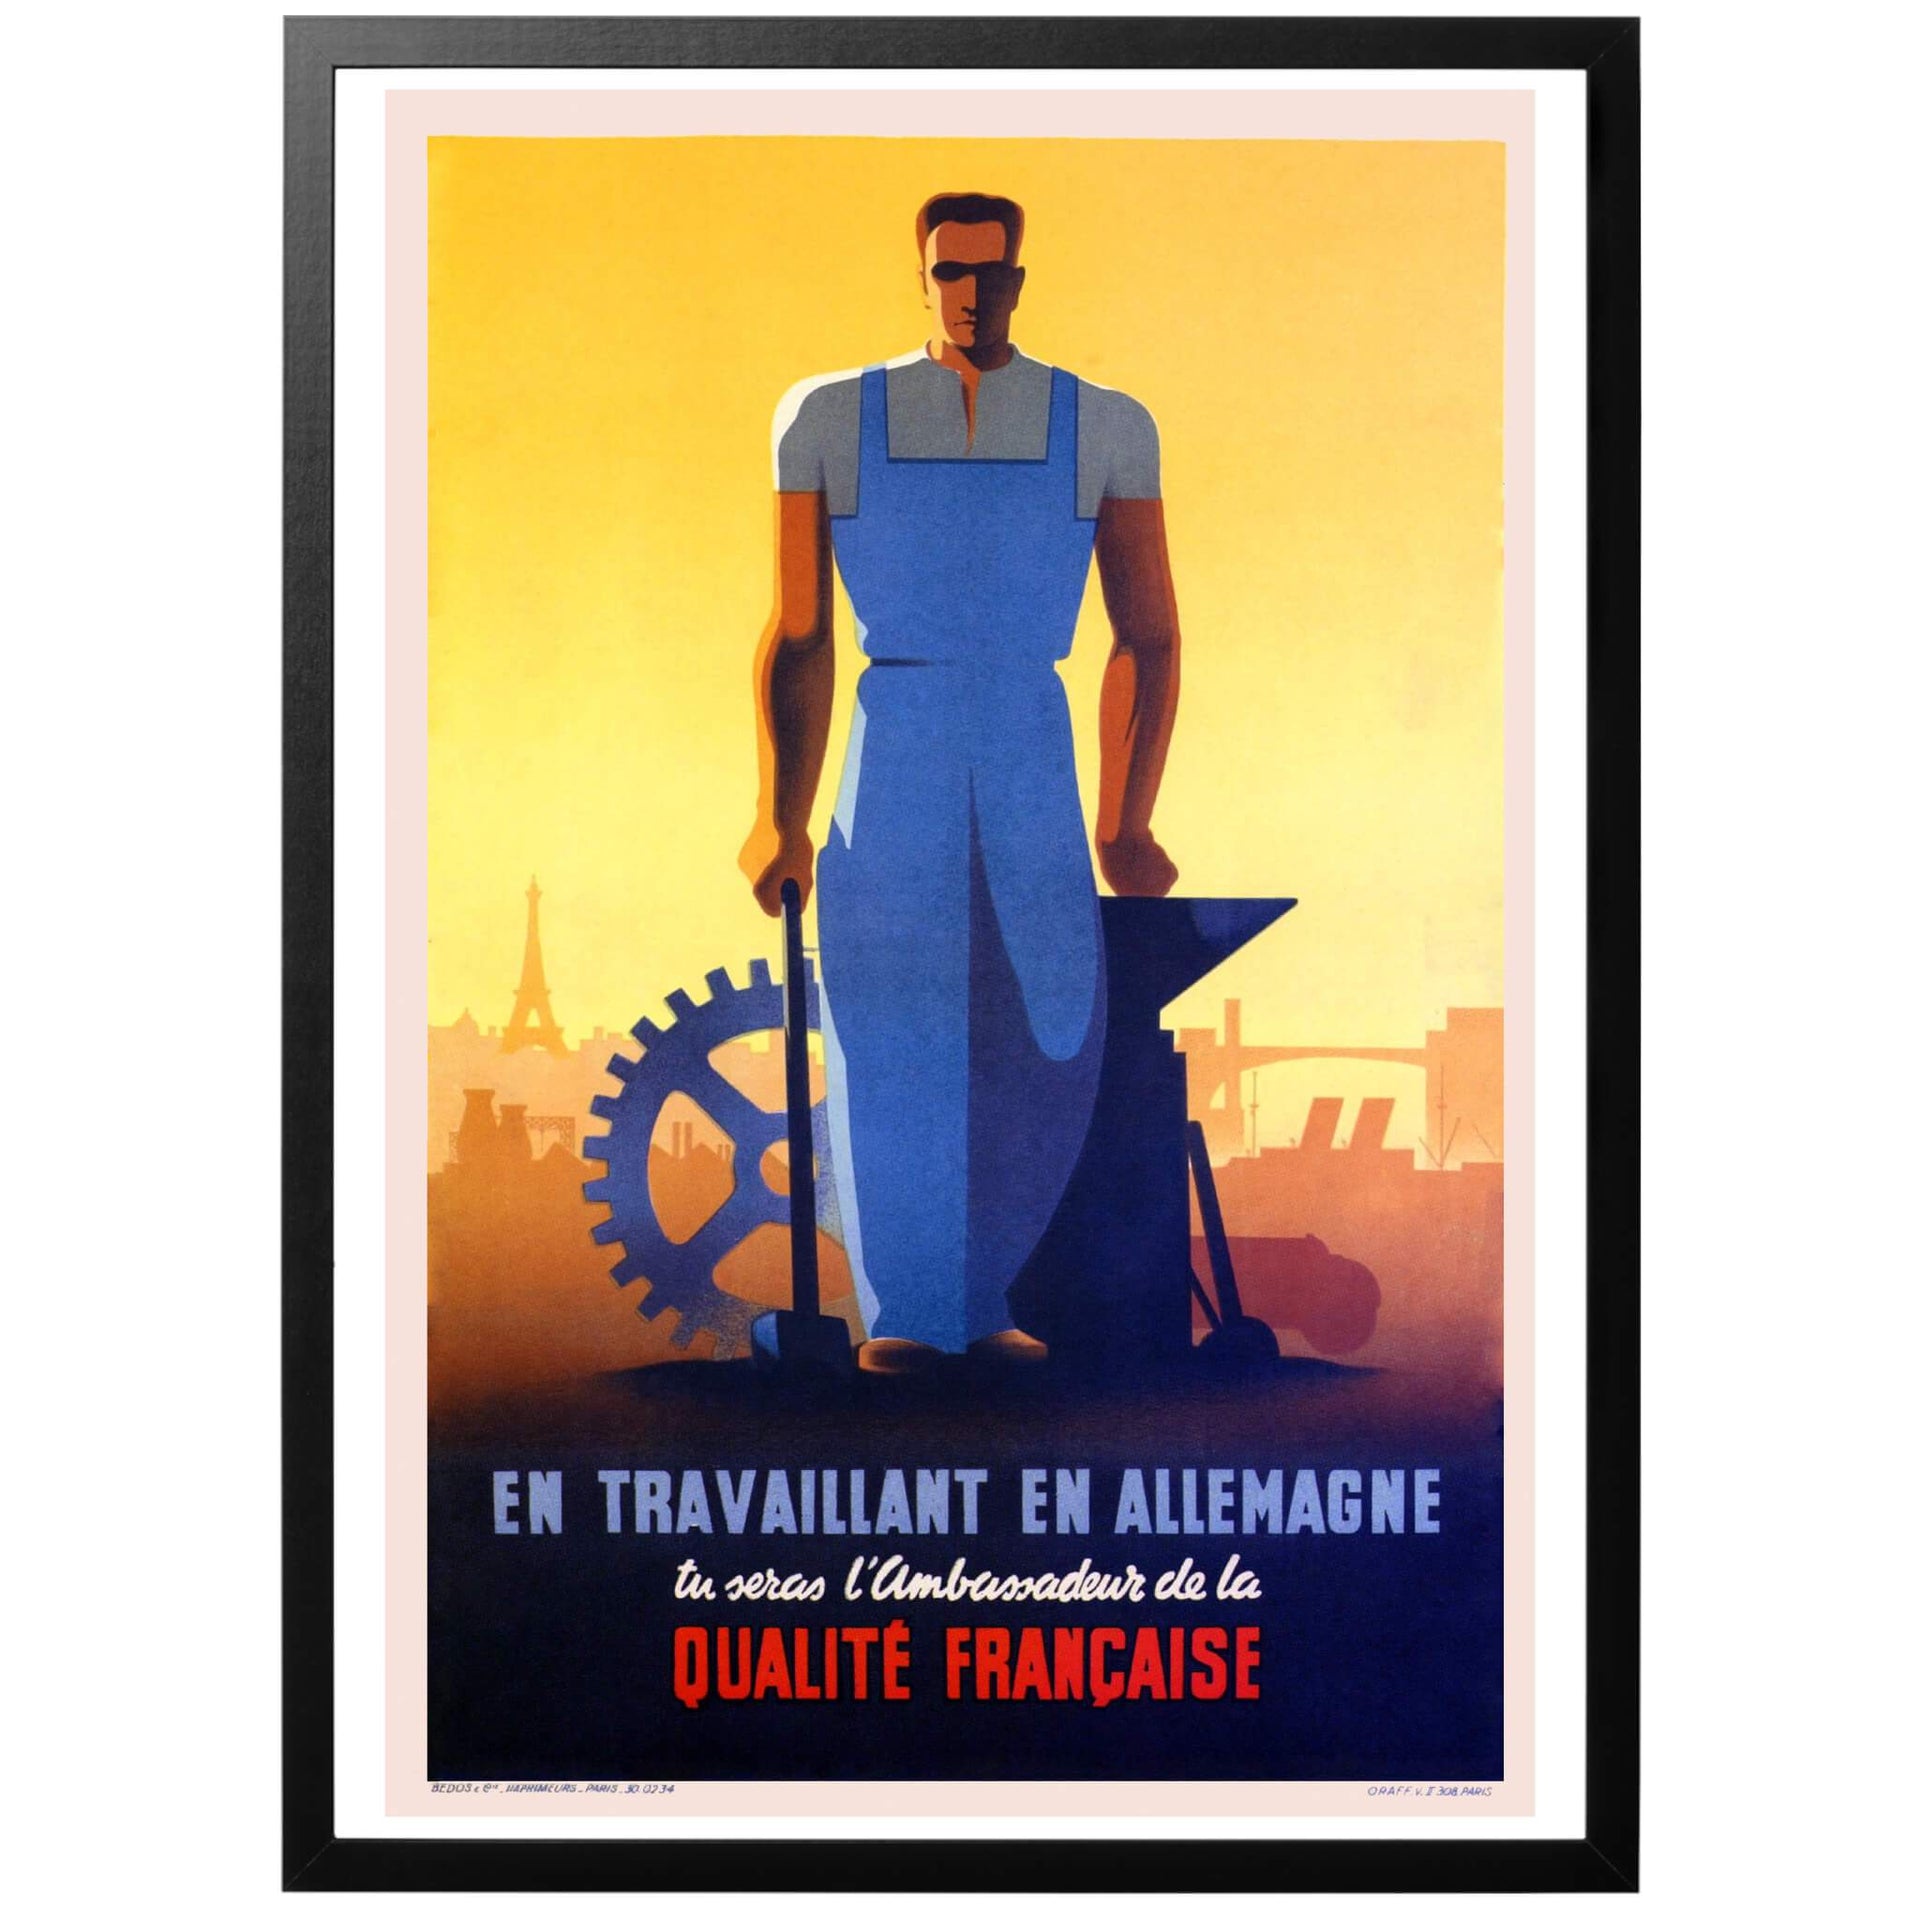 Som arbetare i Tyskland är du en ambassadör för fransk kvalité - Fransk WWII poster från 1943 för att locka franska arbetare till Tyskland. En färgglad och kraftfull poster som användes mycket i det ockuperade Frankrike. Köp den hos oss - vi skickar med PostNord!